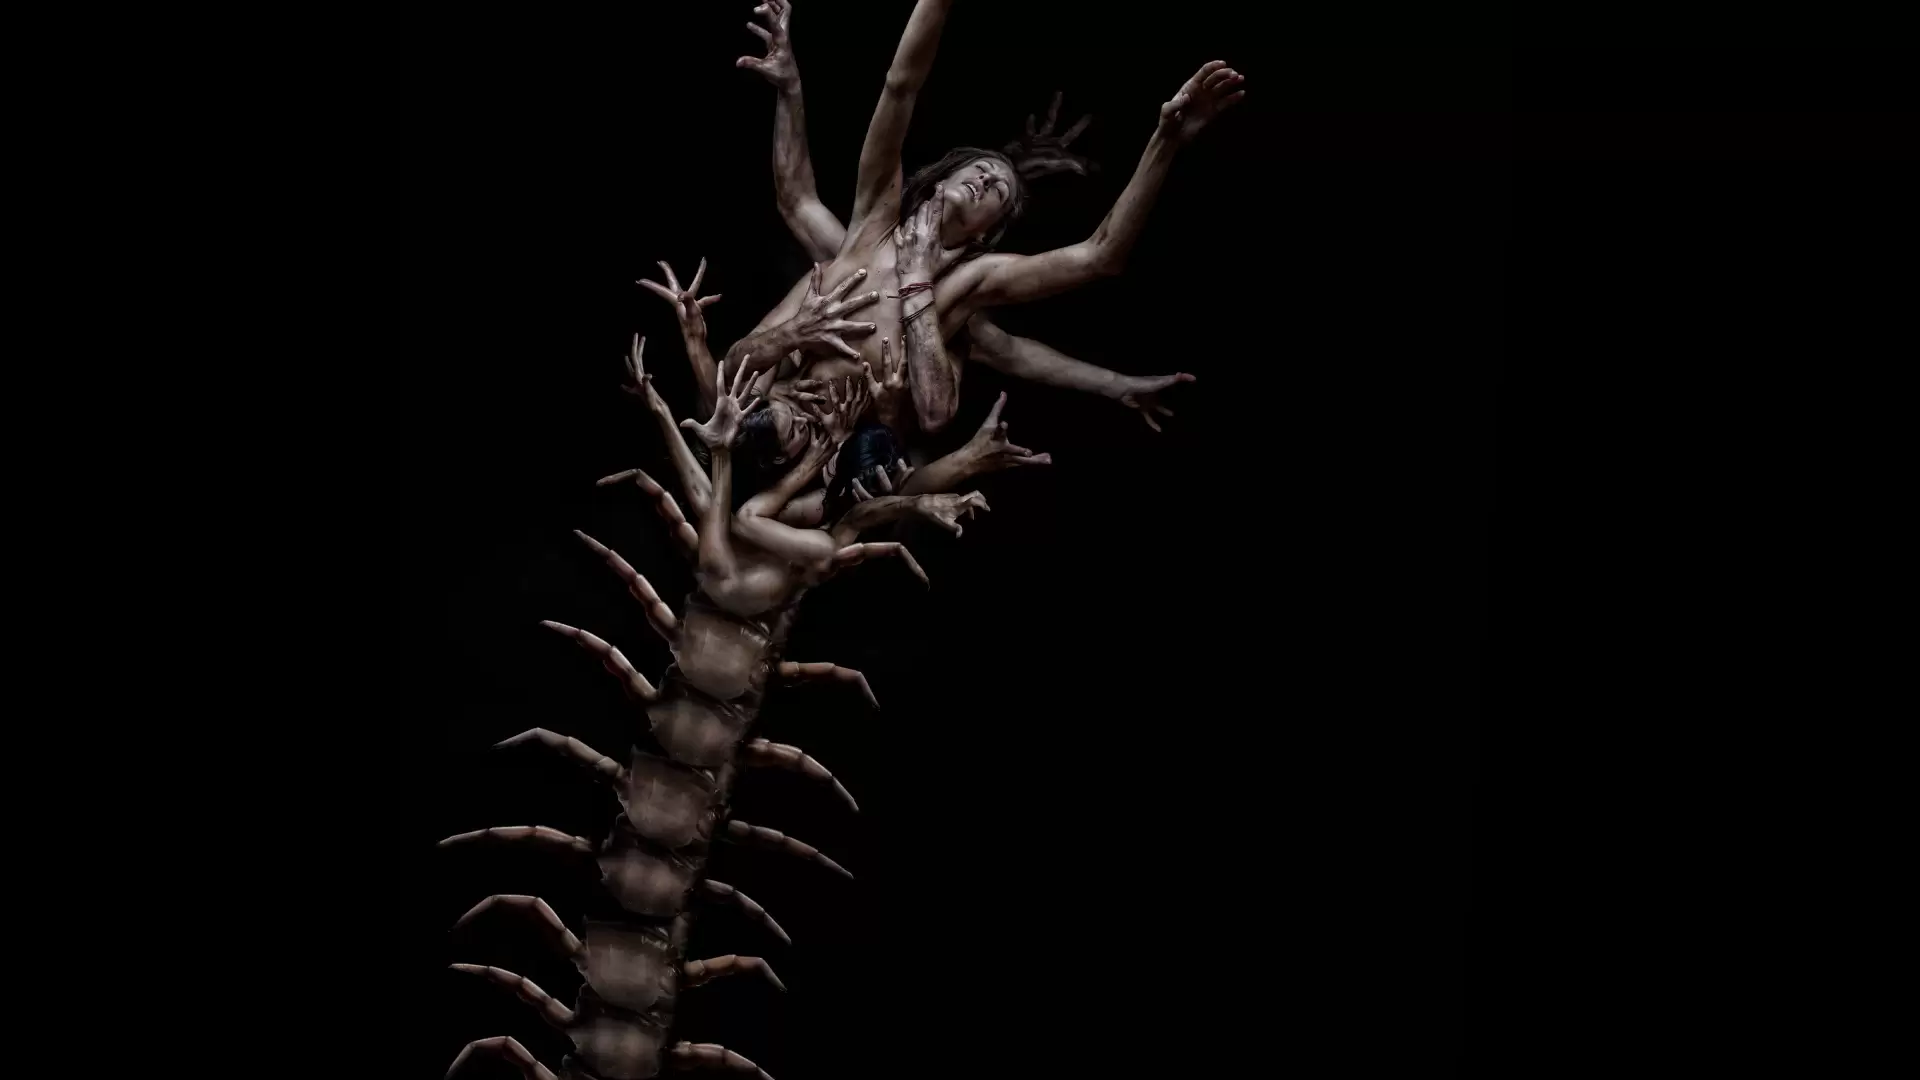 دانلود فیلم The Human Centipede II (Full Sequence) 2011 (هزارپای انسانی ۲ (دنباله کامل)) با زیرنویس فارسی و تماشای آنلاین